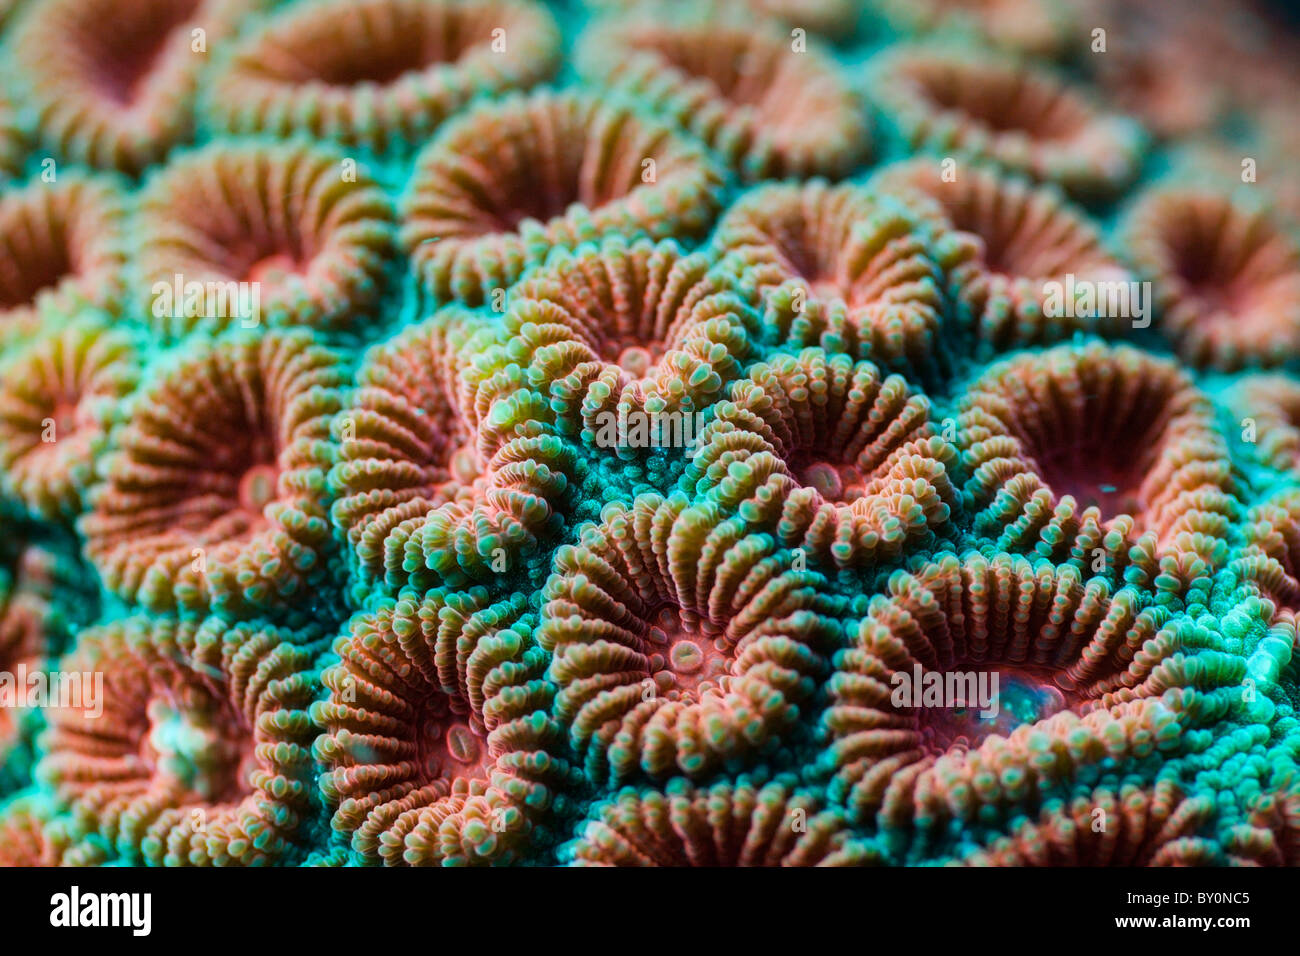 Fluorescente, Diploastrea heliopora Coral duro, Alam Batu, Bali, Indonesia Foto de stock